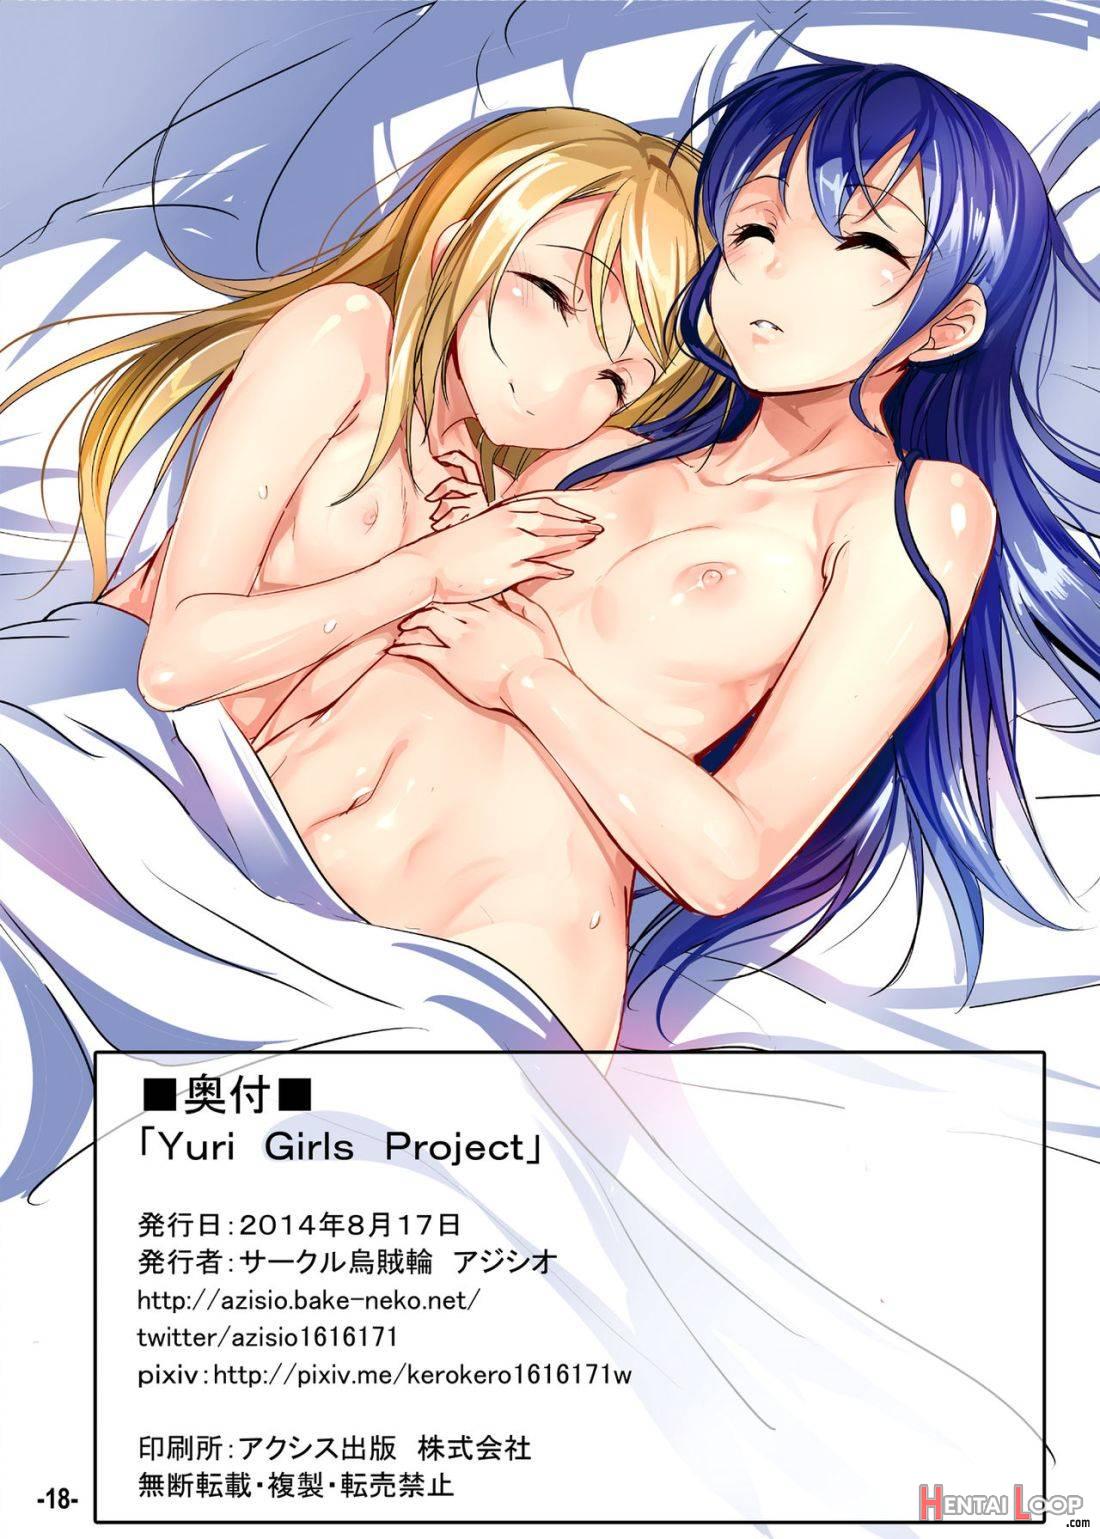 Yuri Girls Project page 17